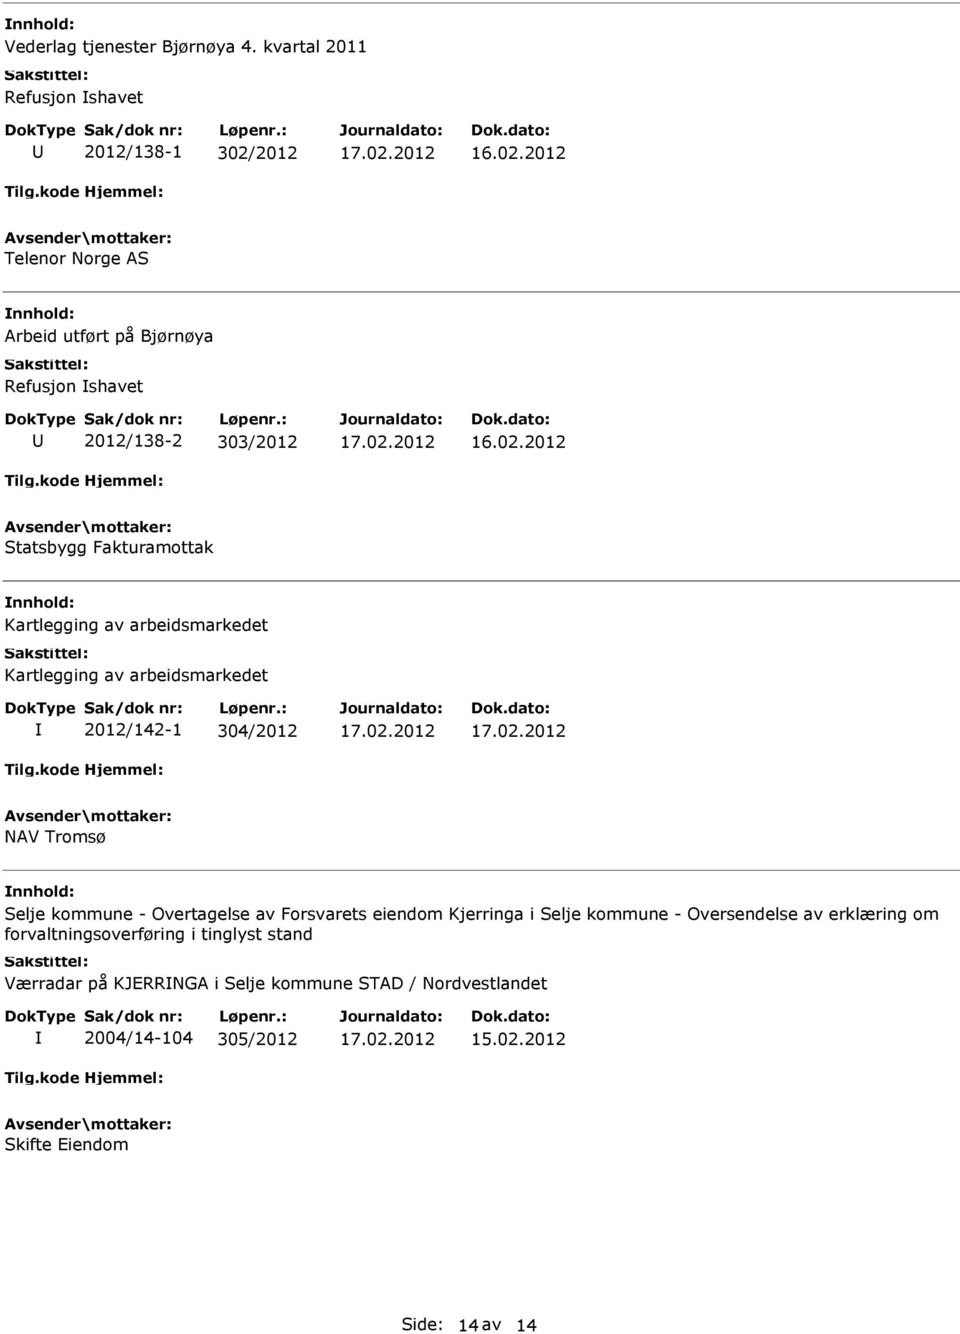 Statsbygg Fakturamottak Kartlegging av arbeidsmarkedet Kartlegging av arbeidsmarkedet 2012/142-1 304/2012 NAV Tromsø Selje kommune -